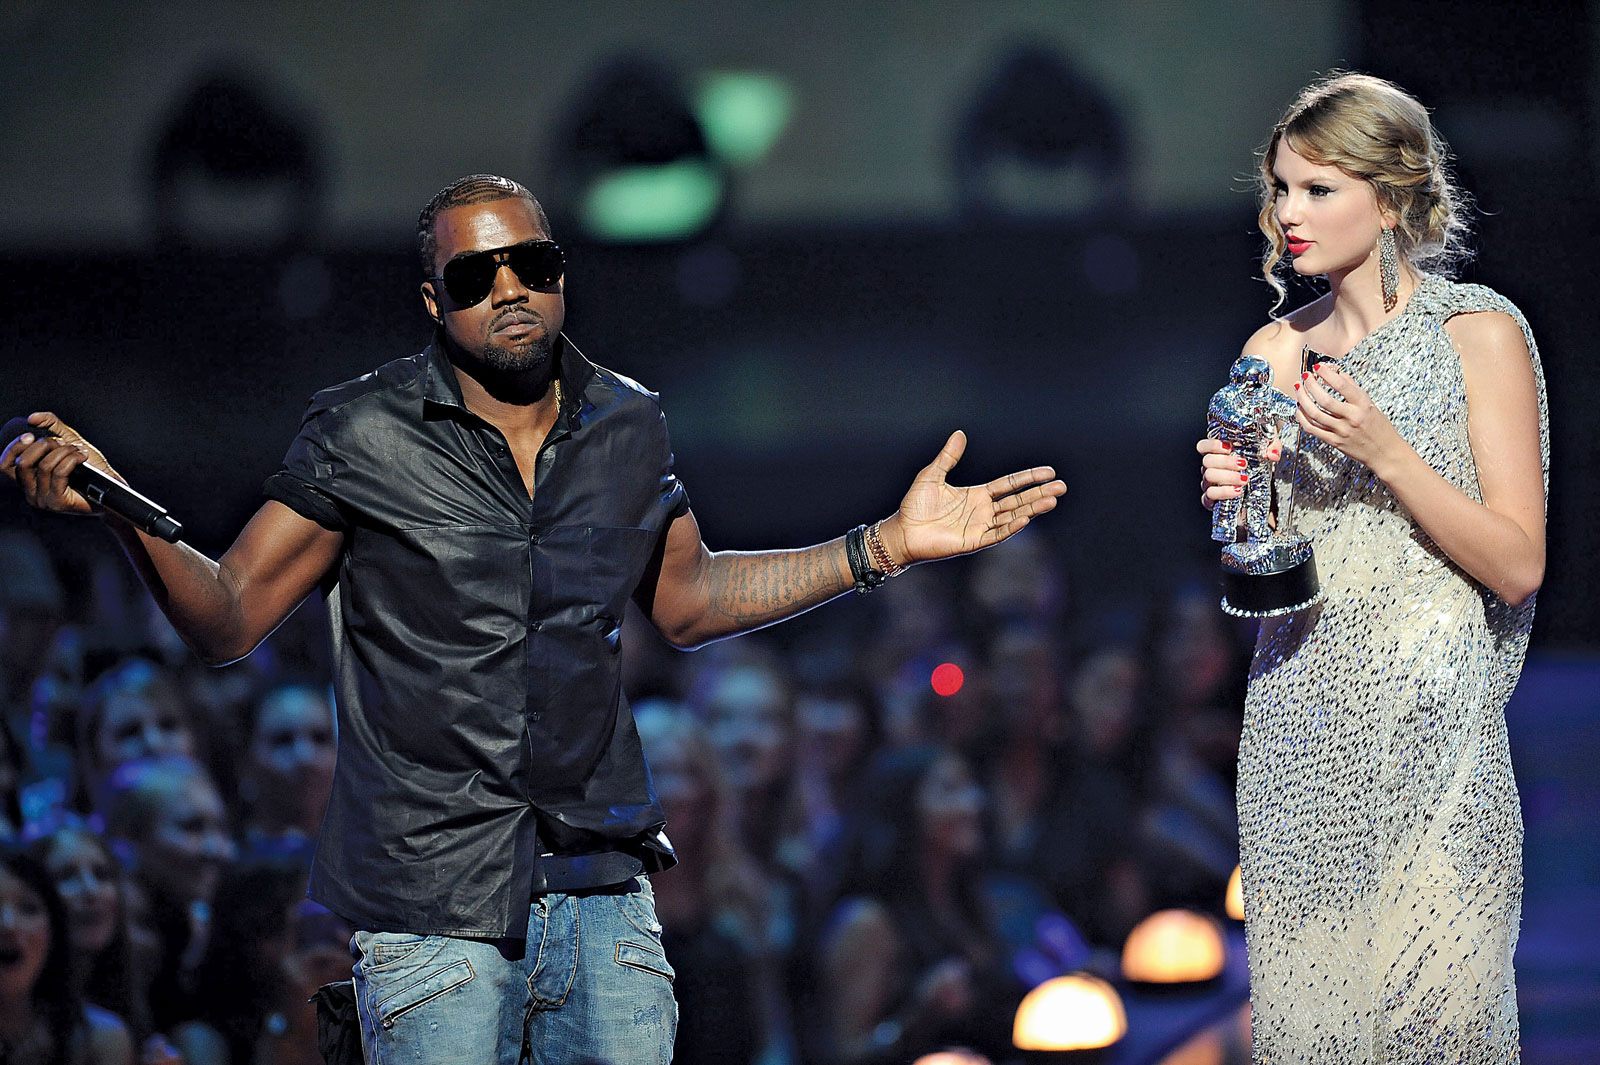 Lisa đọ dáng Taylor Swift gây sốt mạng xã hội, mê mặc kiệm vải - 2sao